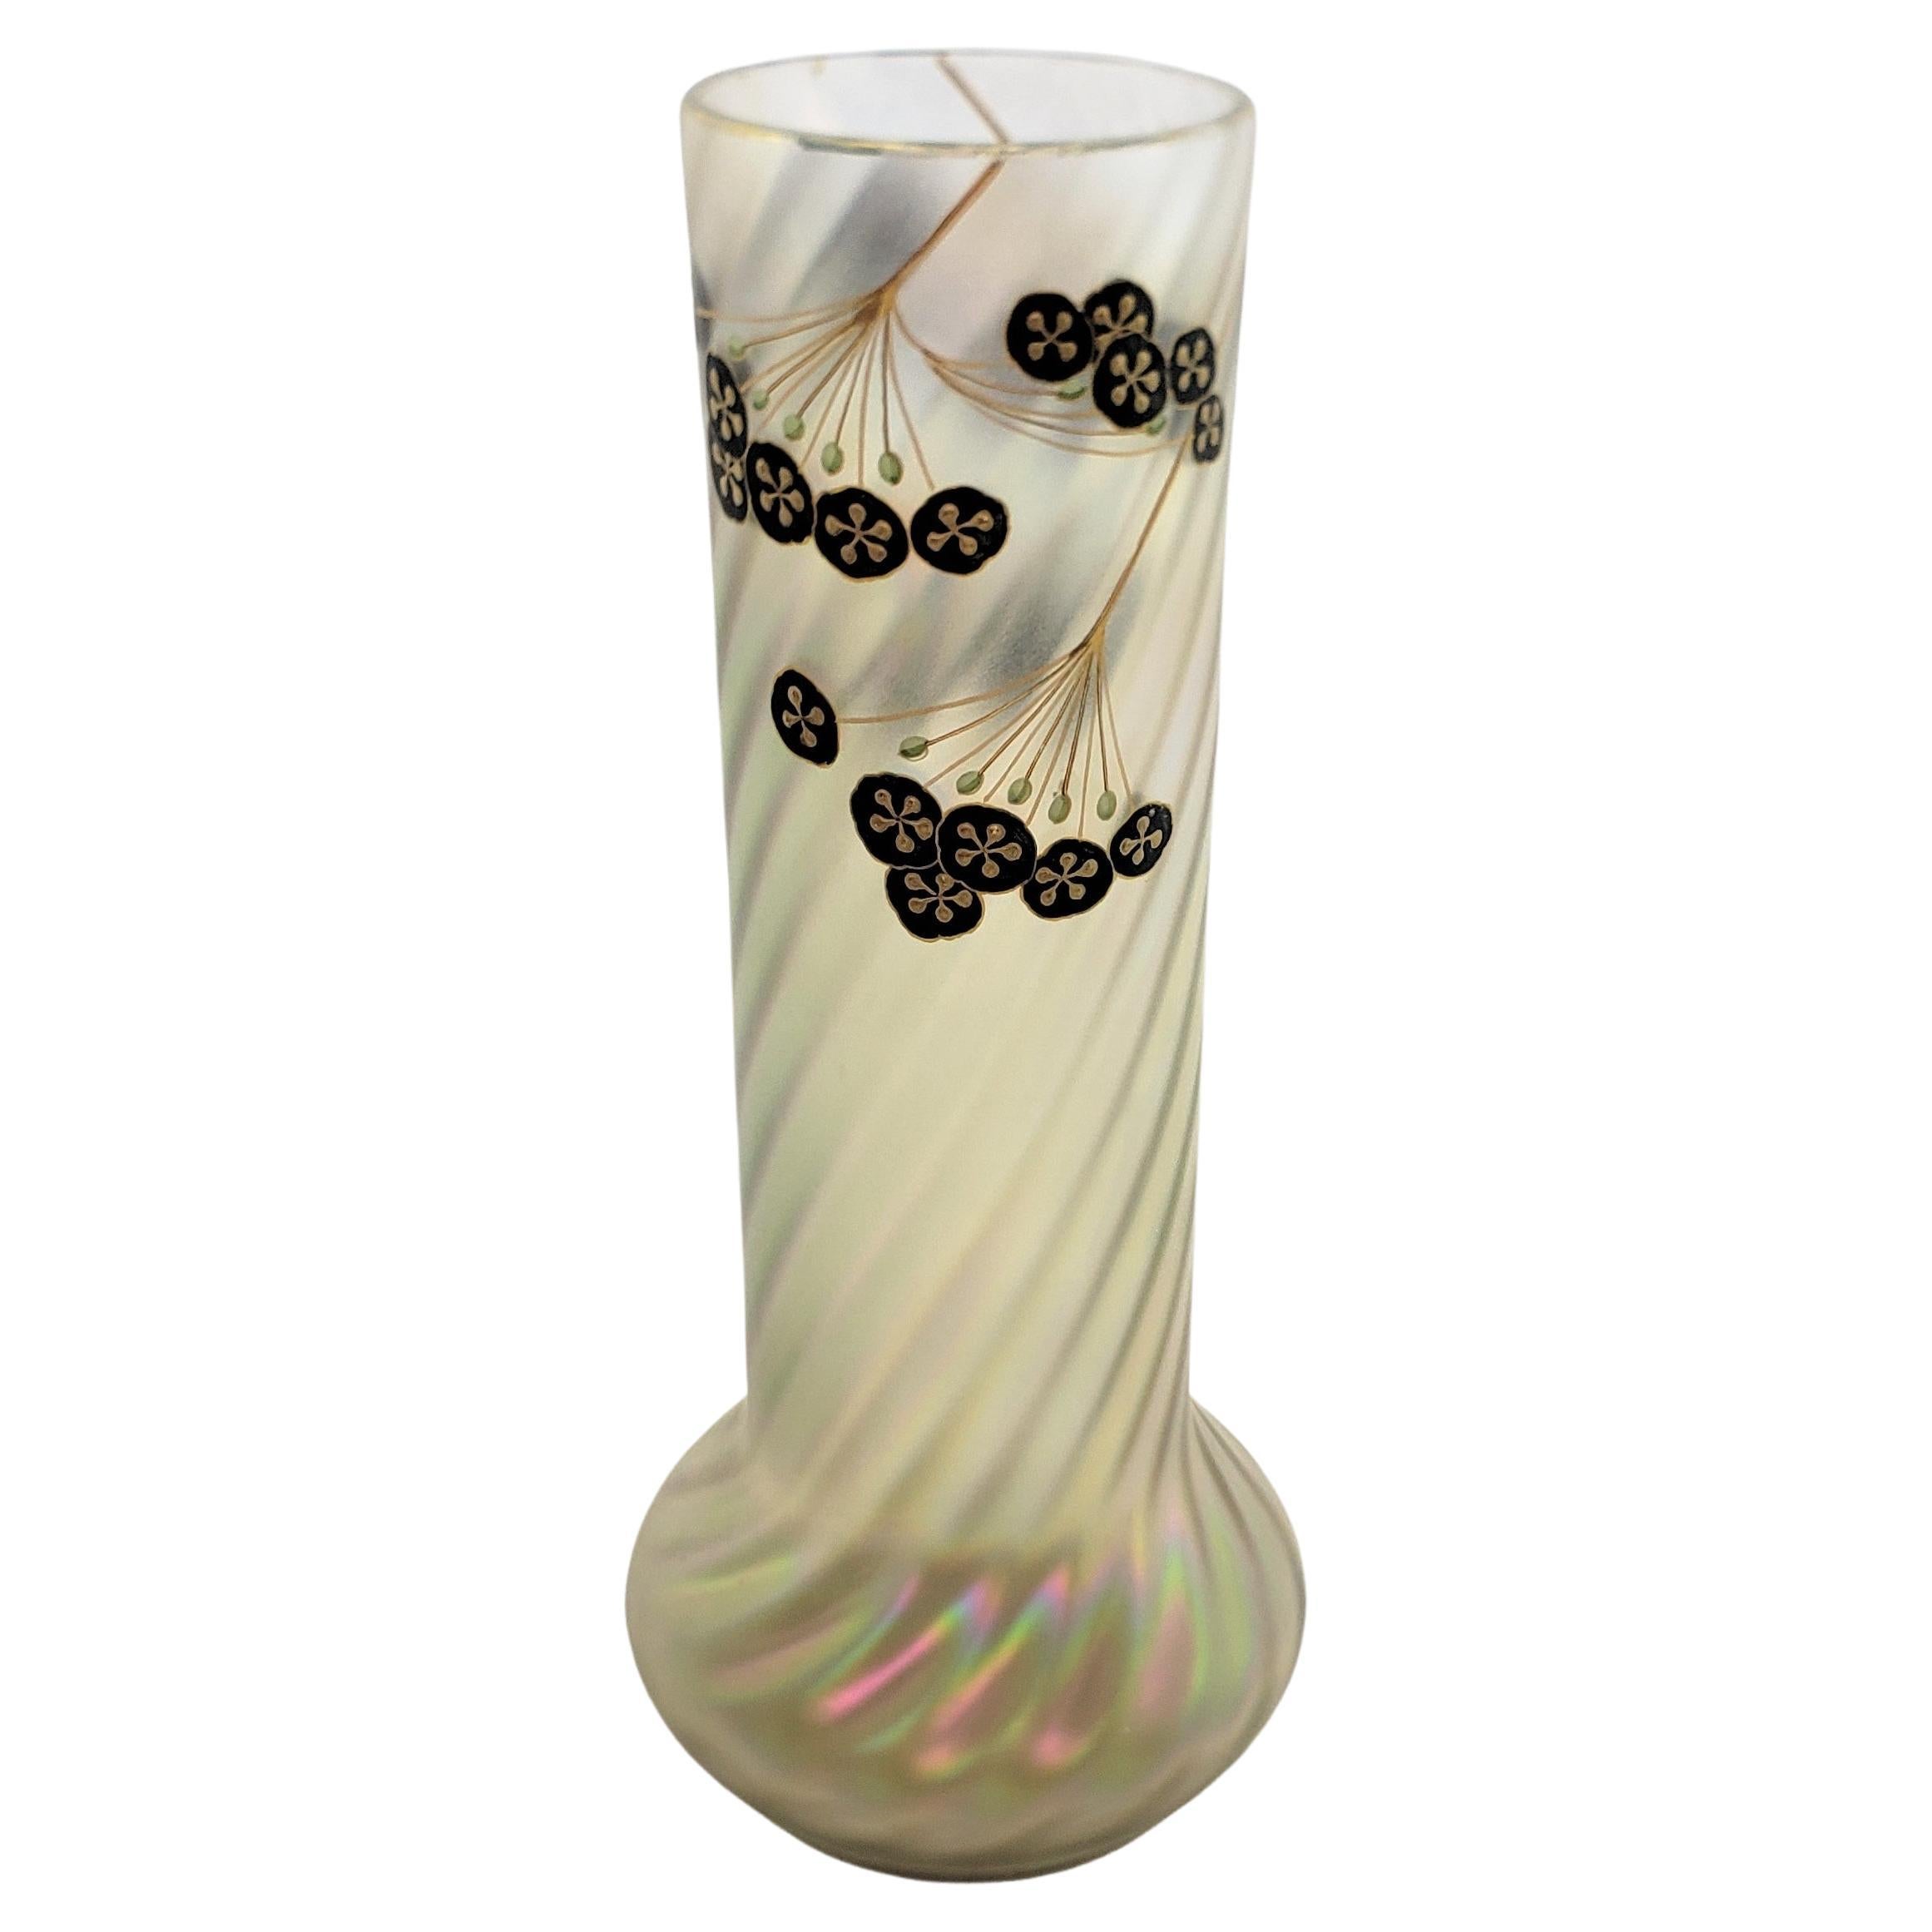 Antico vaso in vetro artistico iridescente Art Nouveau con decorazioni floreali smaltate